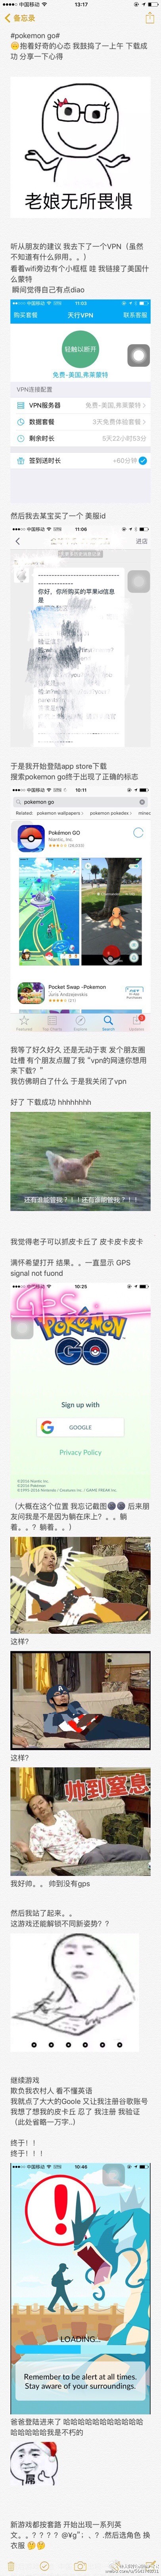 段子频出 Pokemon Go全球玩家逗趣反应合集